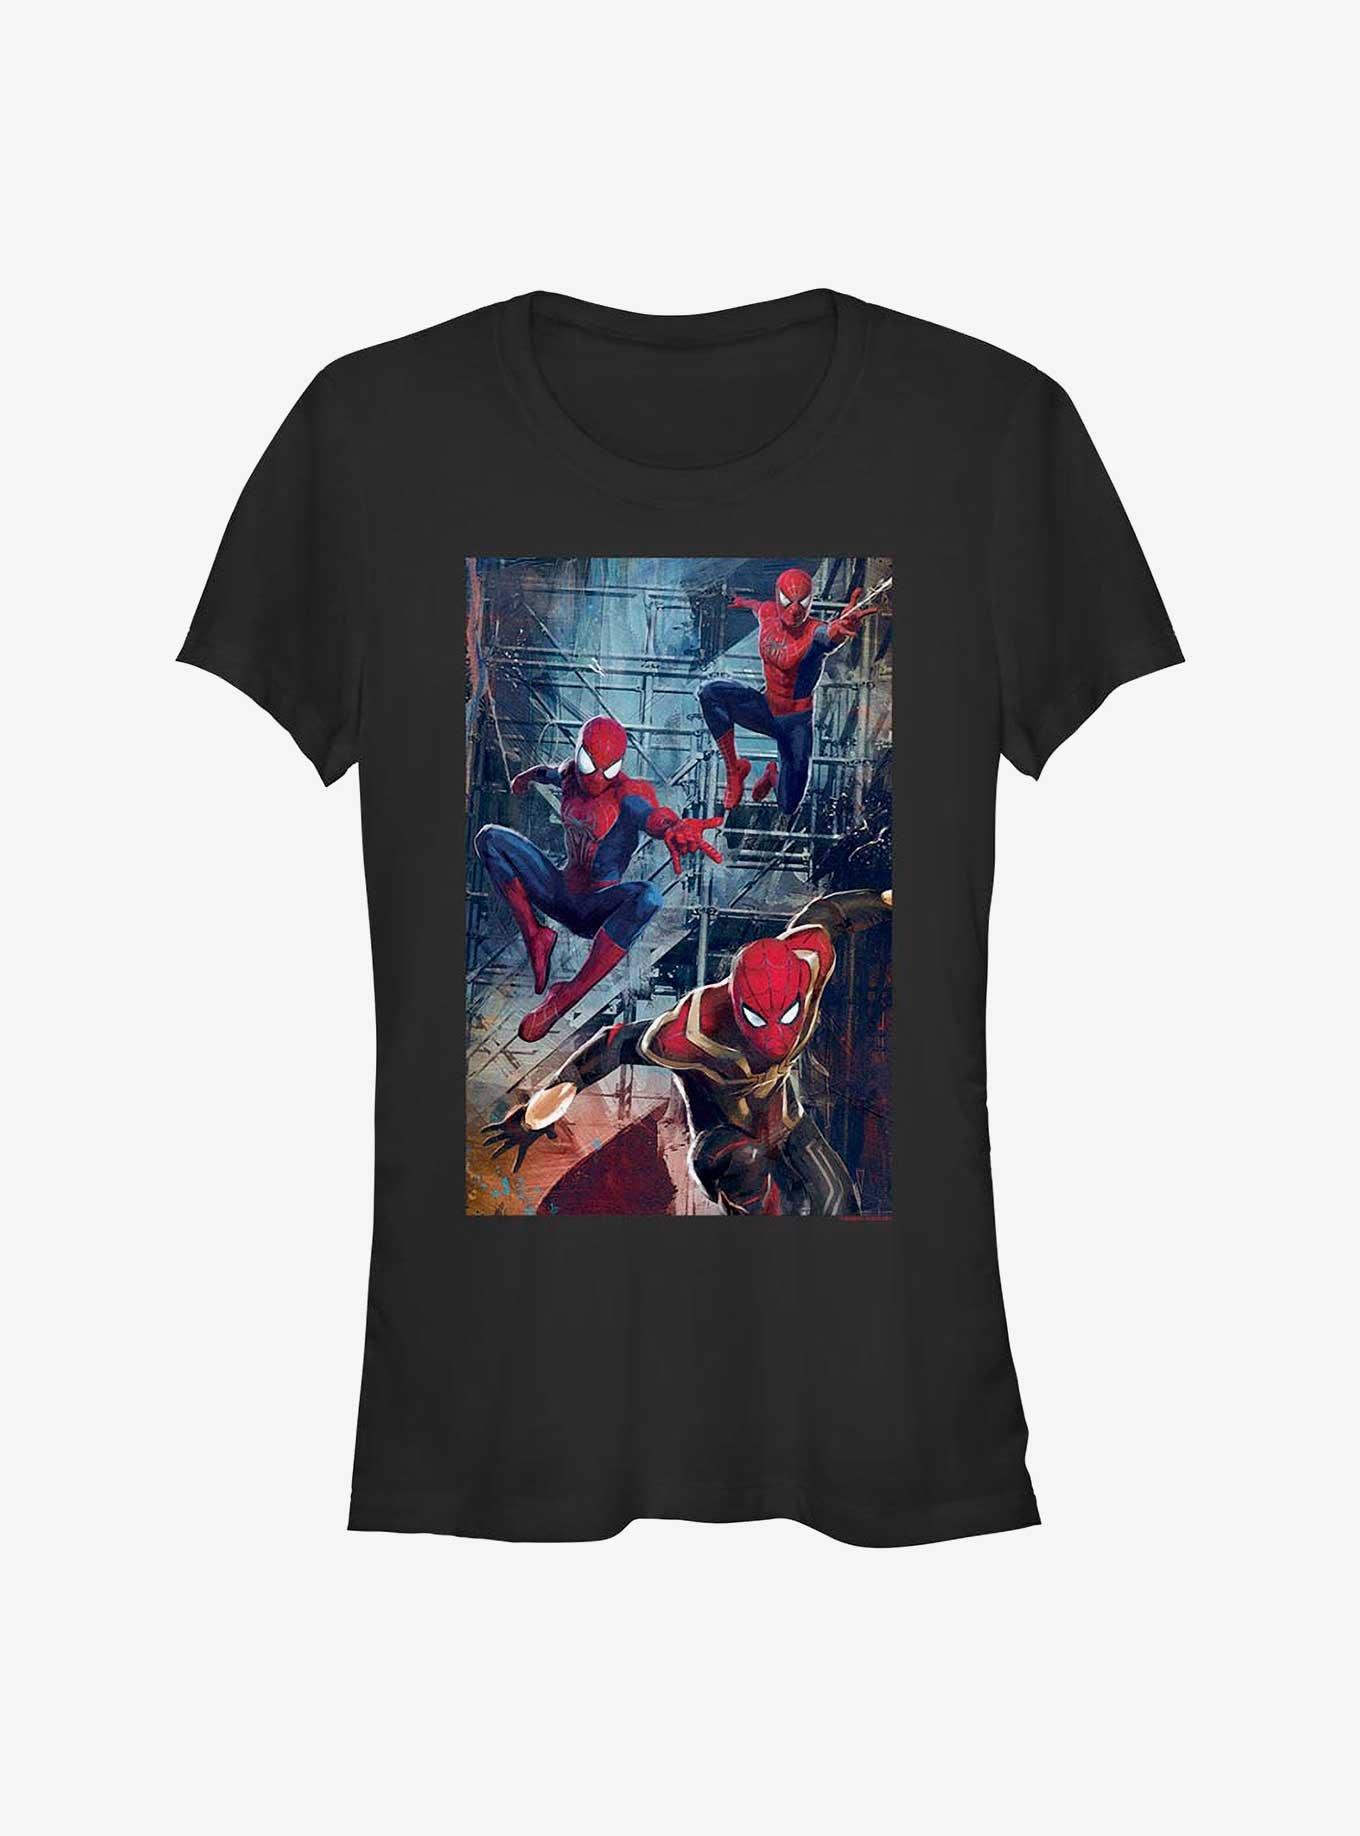 Marvel Spider-Man: No Way Home Spidey Attack Girls T-Shirt